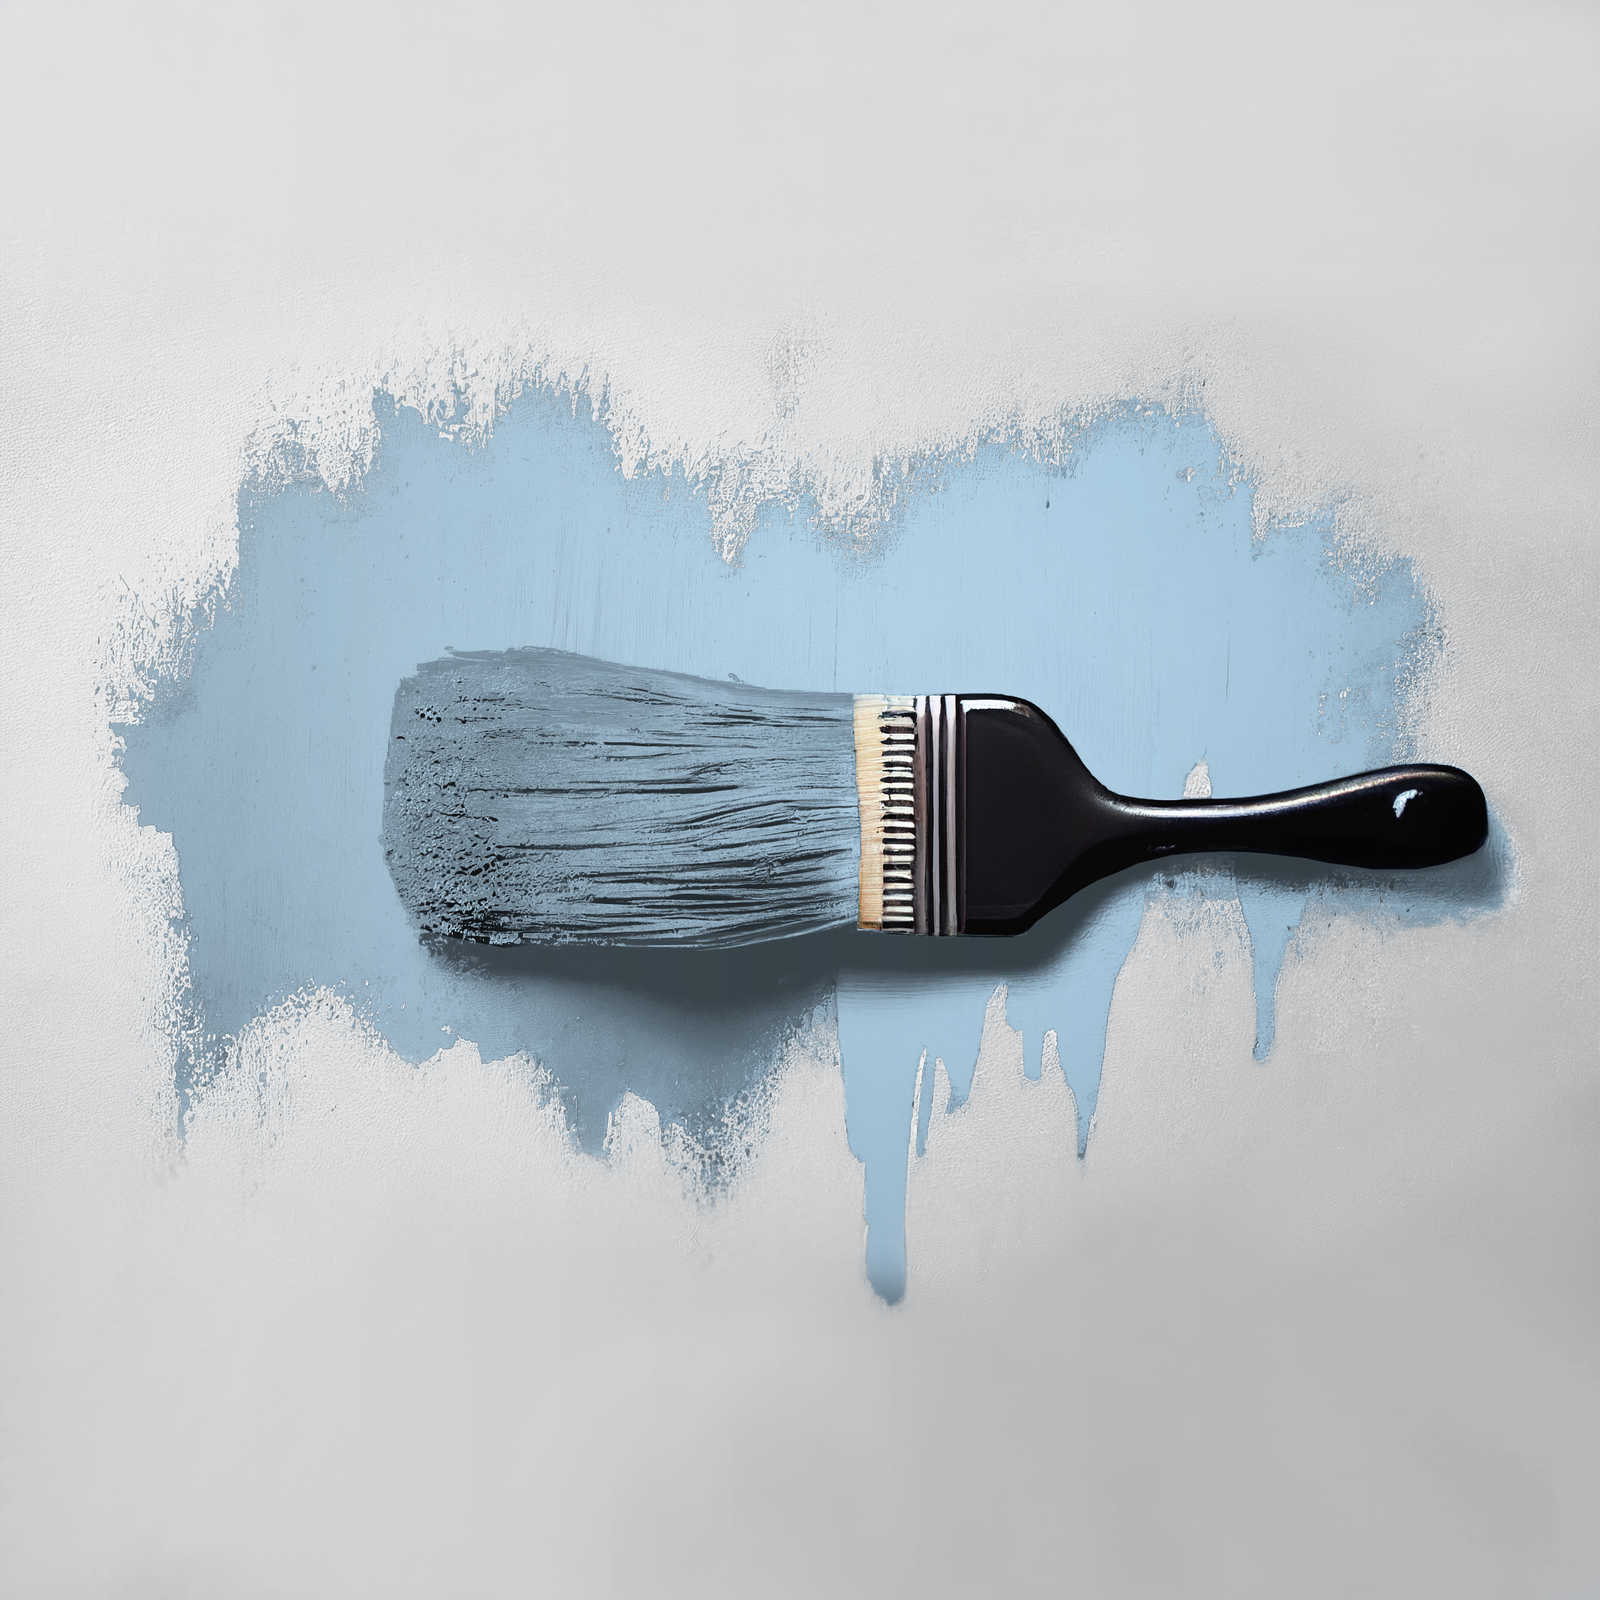             Pittura murale TCK3003 »Soft Sky« in blu cielo amichevole – 2,5 litri
        